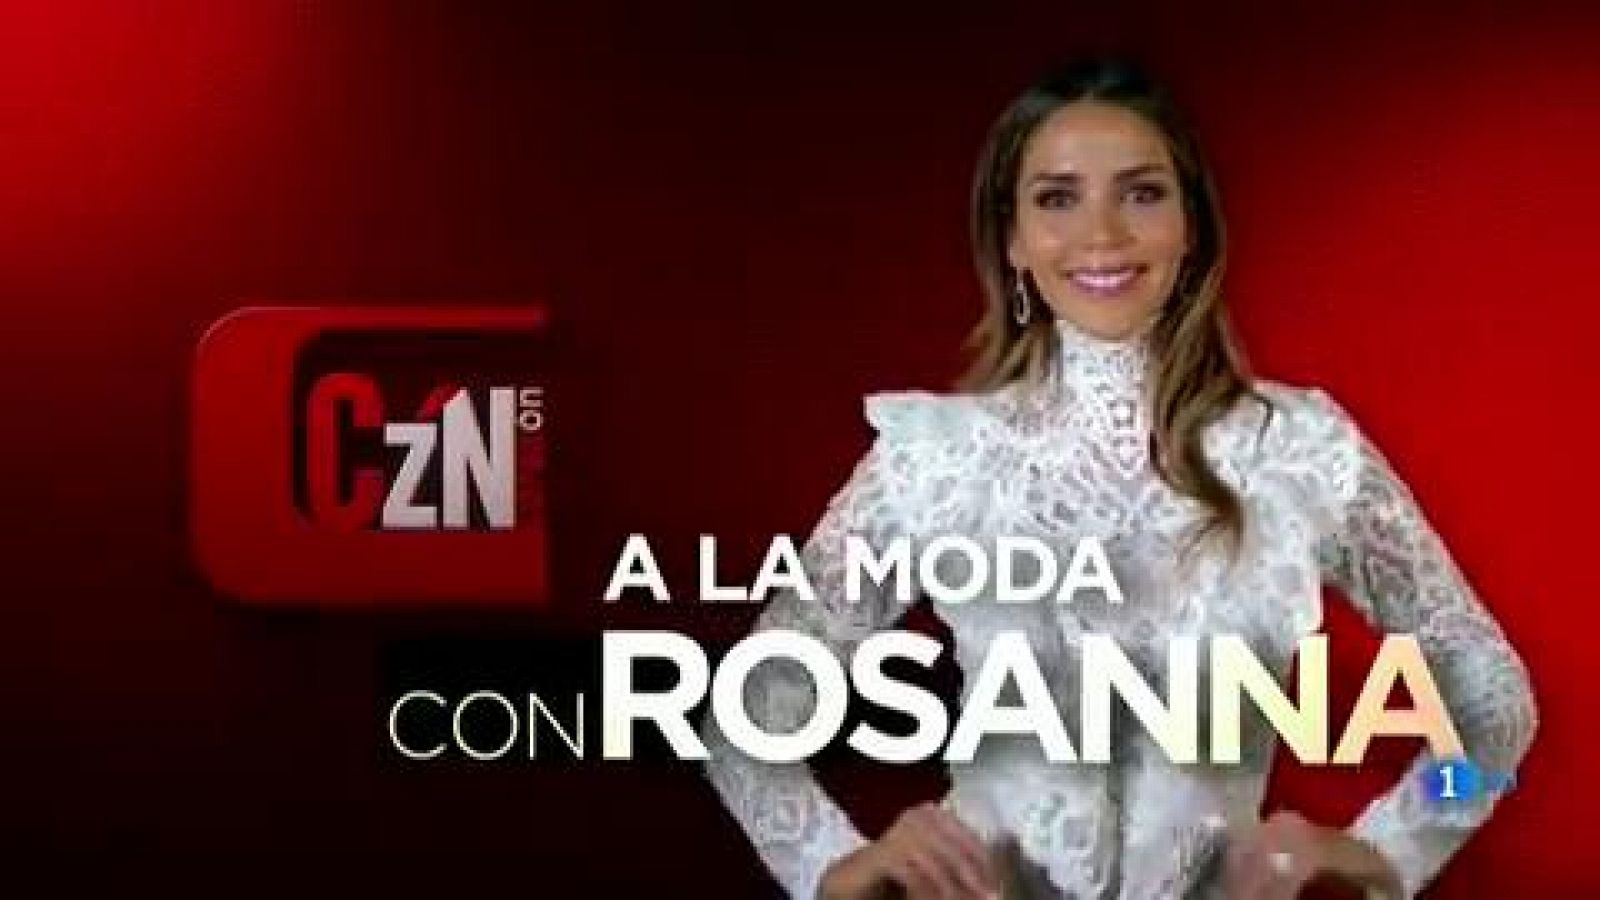 Corazón - A la moda con Rosanna: ¿Cómo se prepara una modelo?